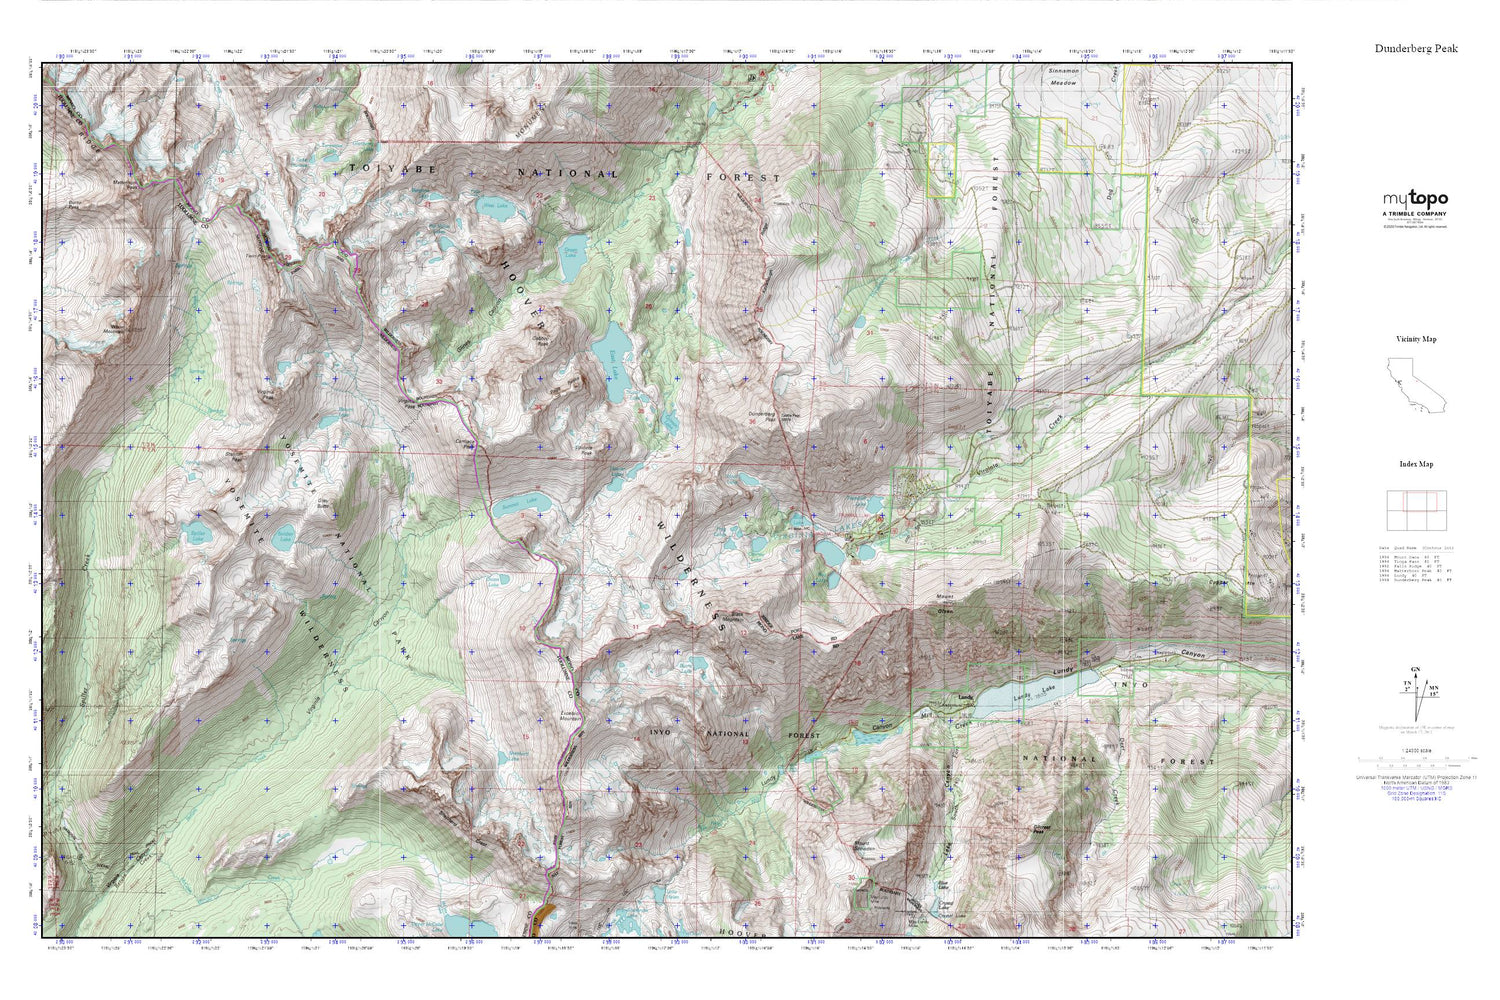 Dunderberg Peak MyTopo Explorer Series Map Image